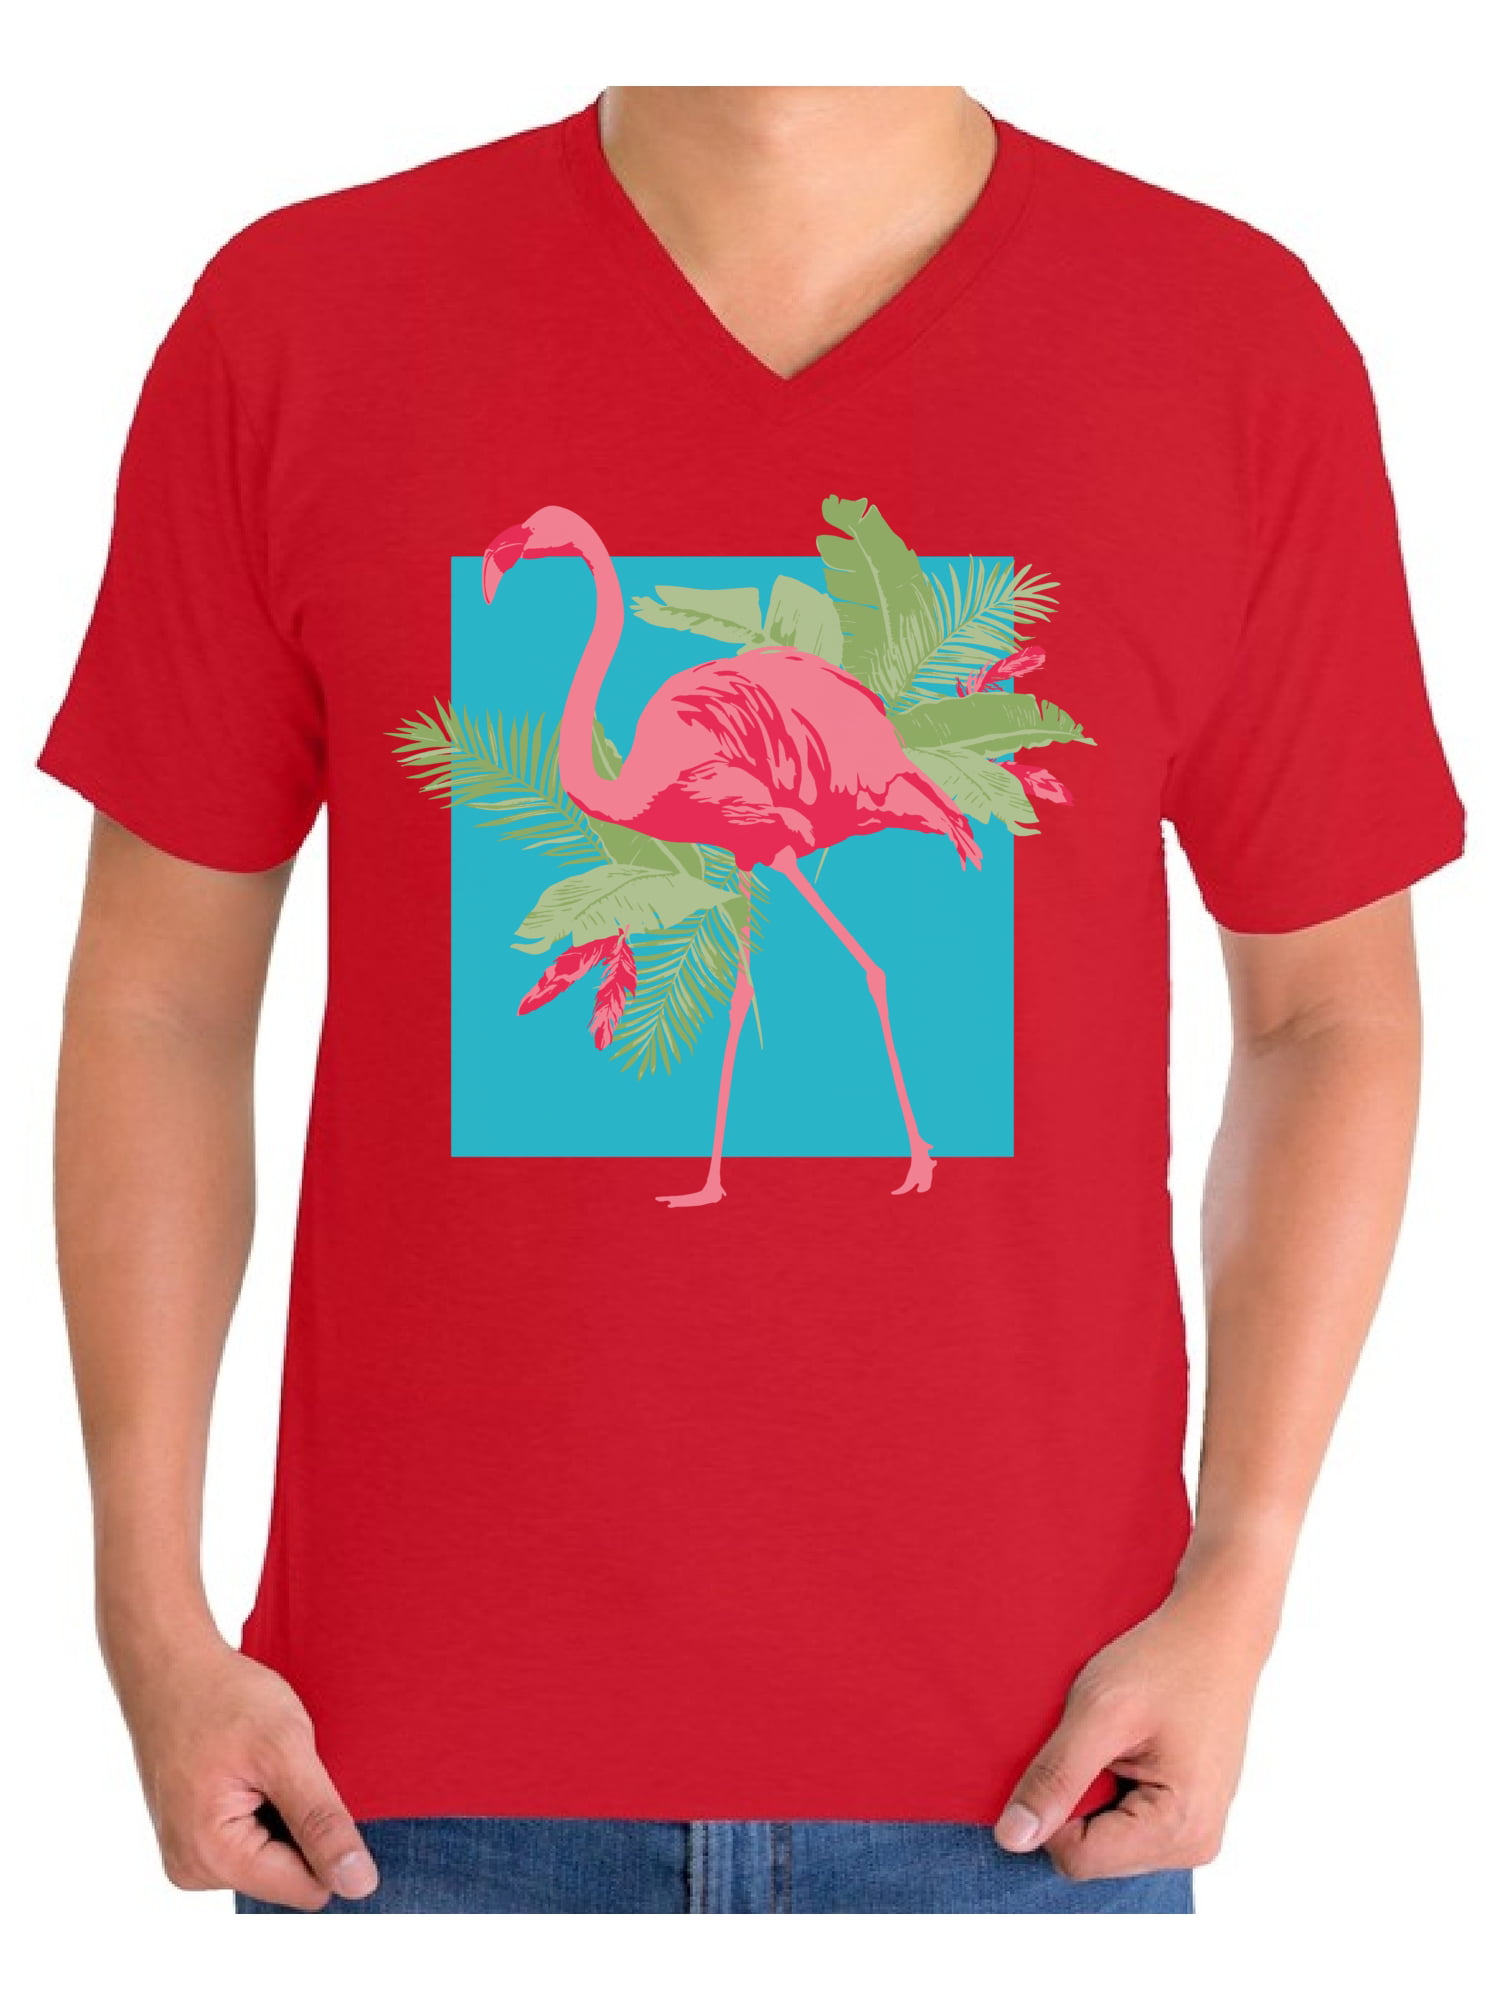 Awkward Styles - Awkward Styles Pink Flamingo Shirts Flamingo V Neck ...